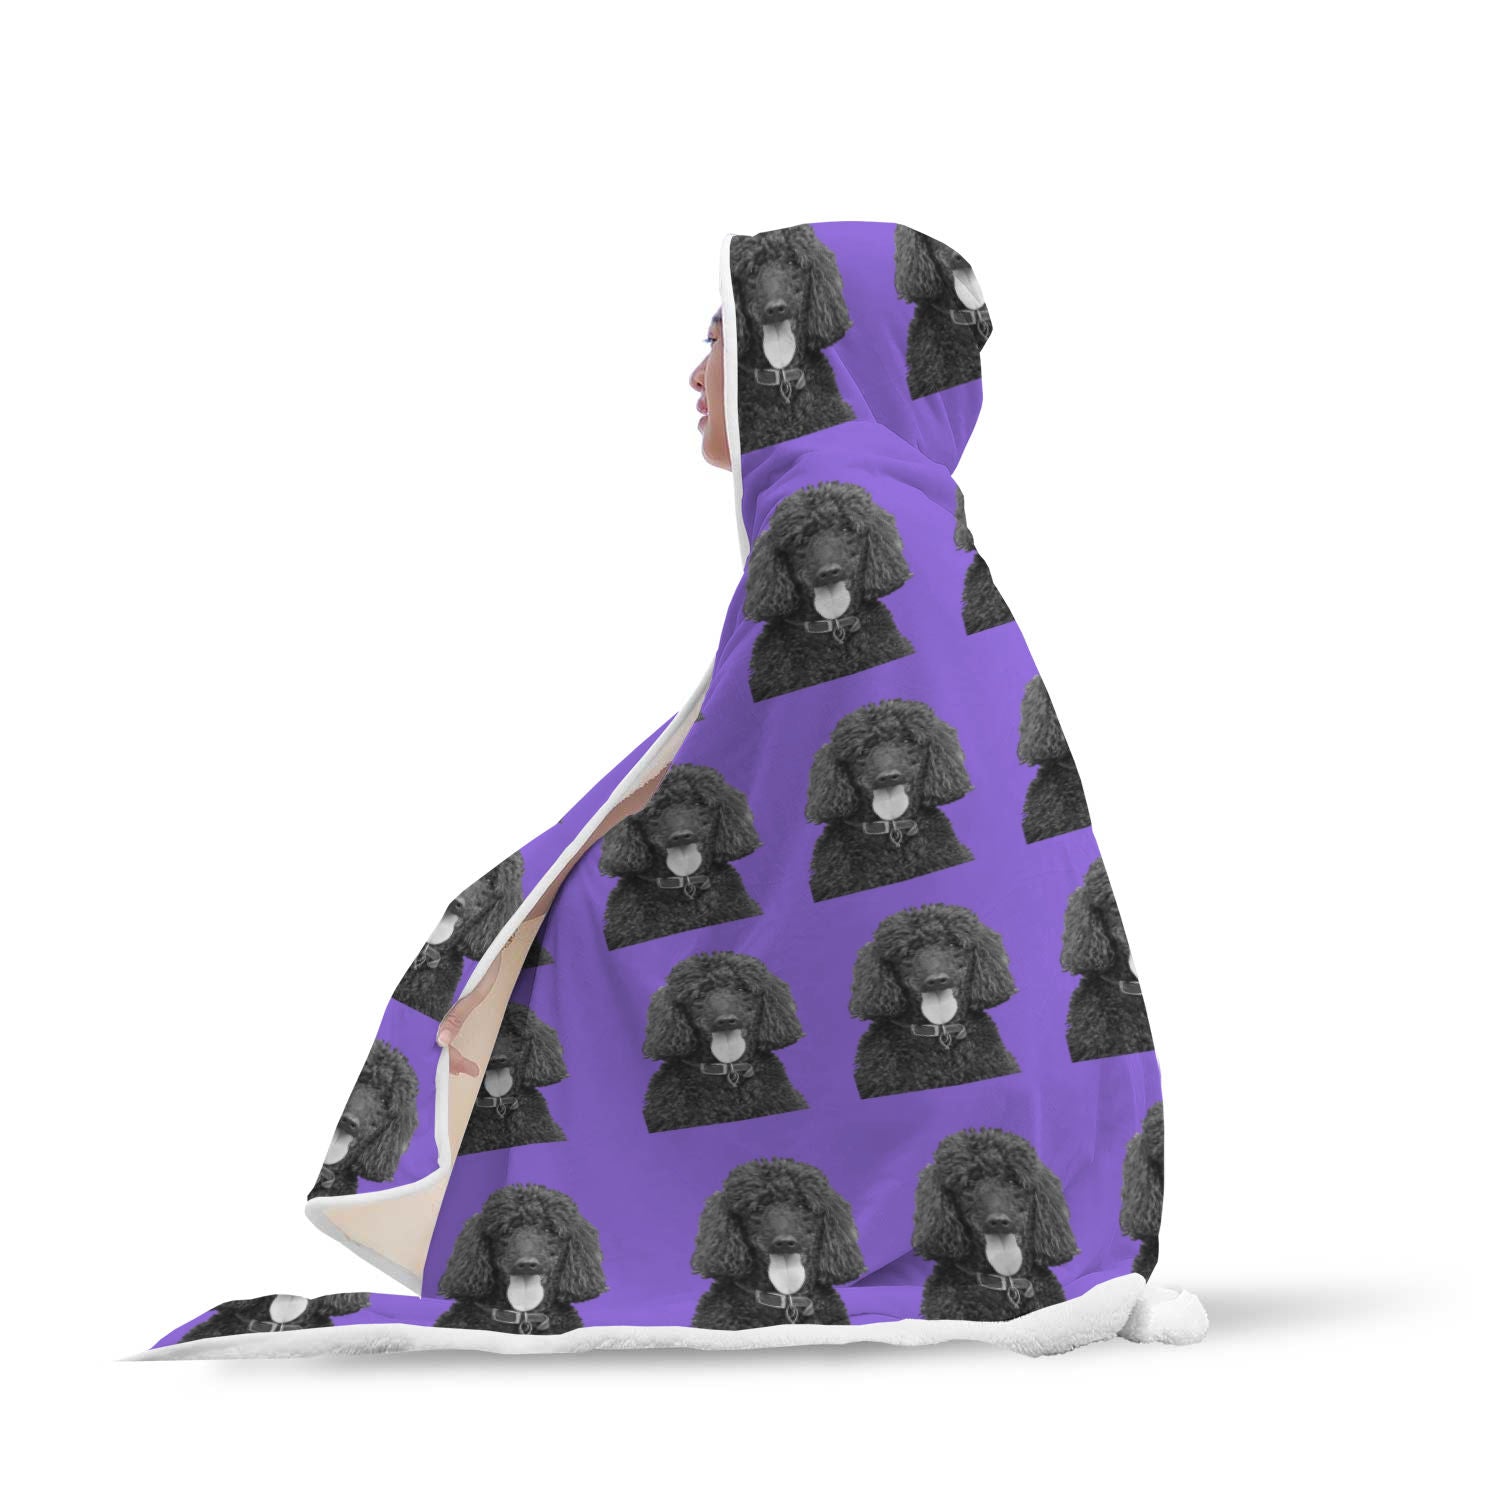 Standard Poodle Hooded Blanket - Black Poodle